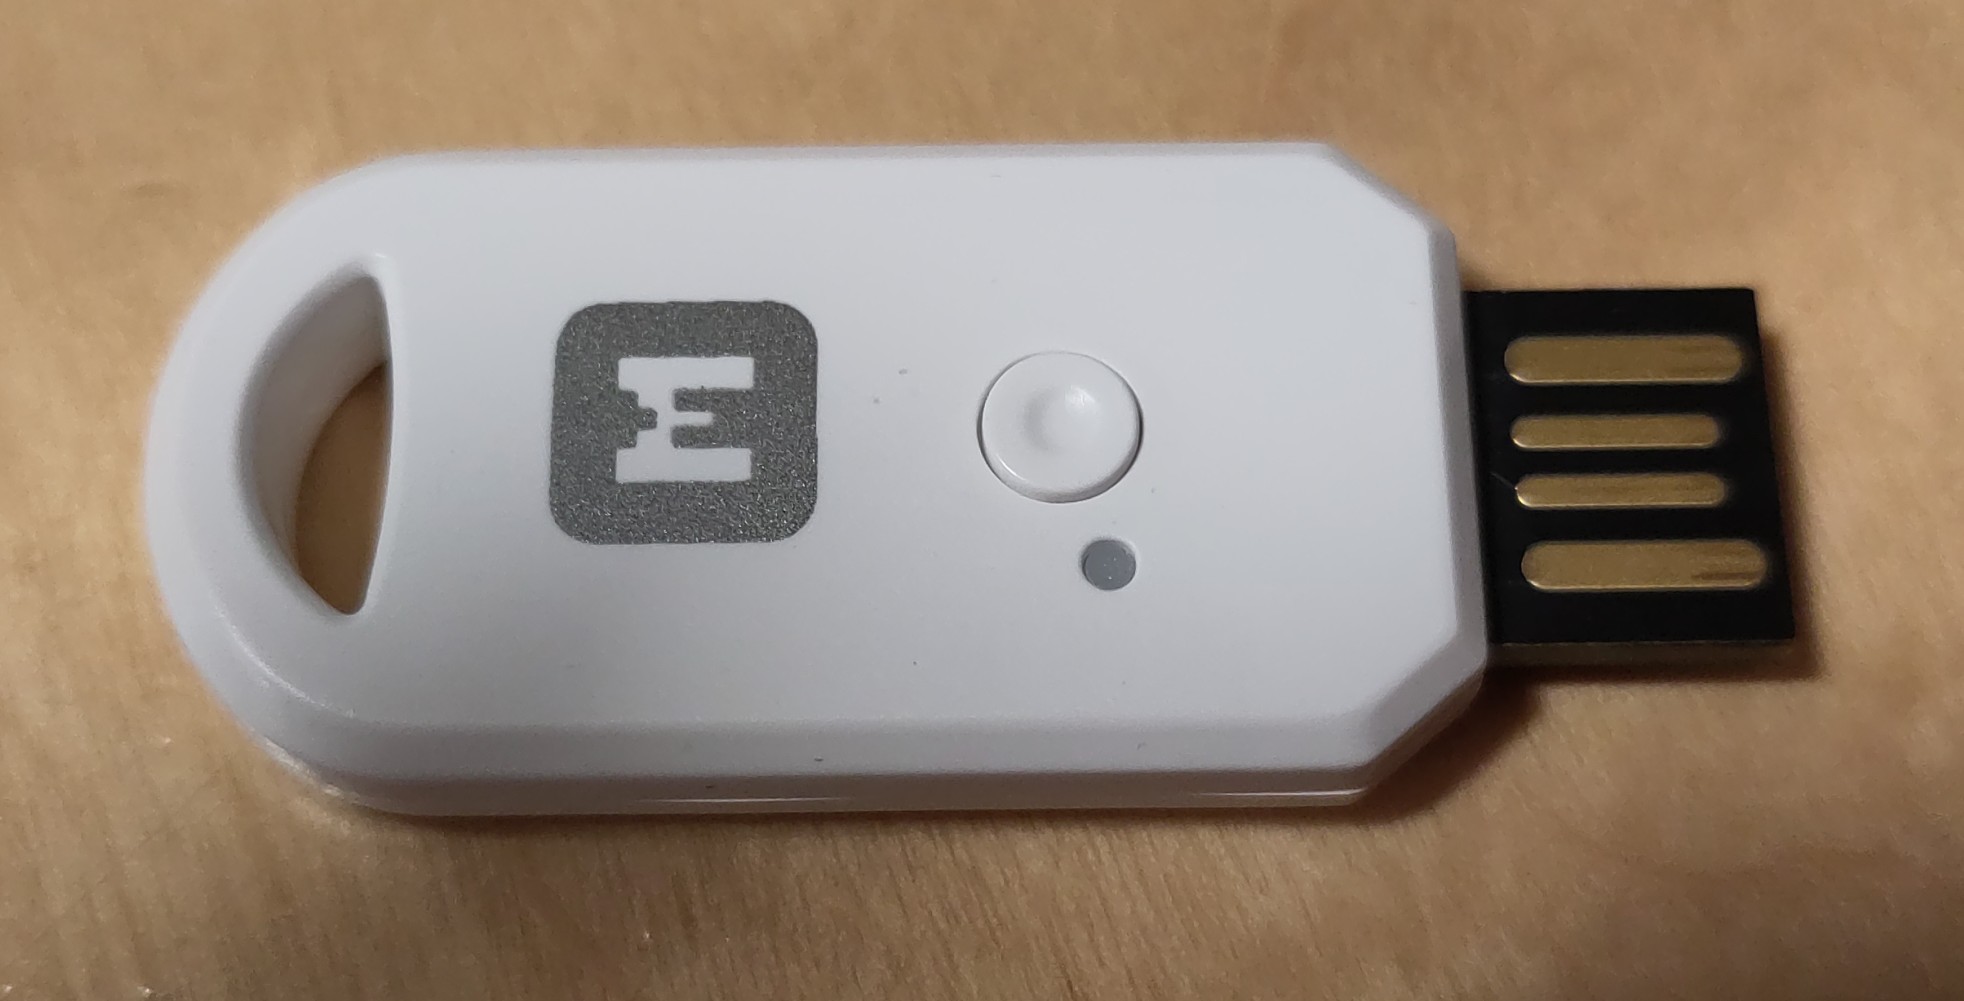 Man sieht eine Art USB-Stick auf einer Holzoberfläche liegen. Es ist ein "M" als Logo draufgedruckt. Des Weiteren ist eine kleine Ausstanzung für einen Schlüsselanhänger zu sehen. Darüberhinaus sieht man einen kleinen Button sowie eine LED (bzw. das es einen grauen Punkt gibt, welcher leuchten kann). Der USB-Dongle ist weiß.